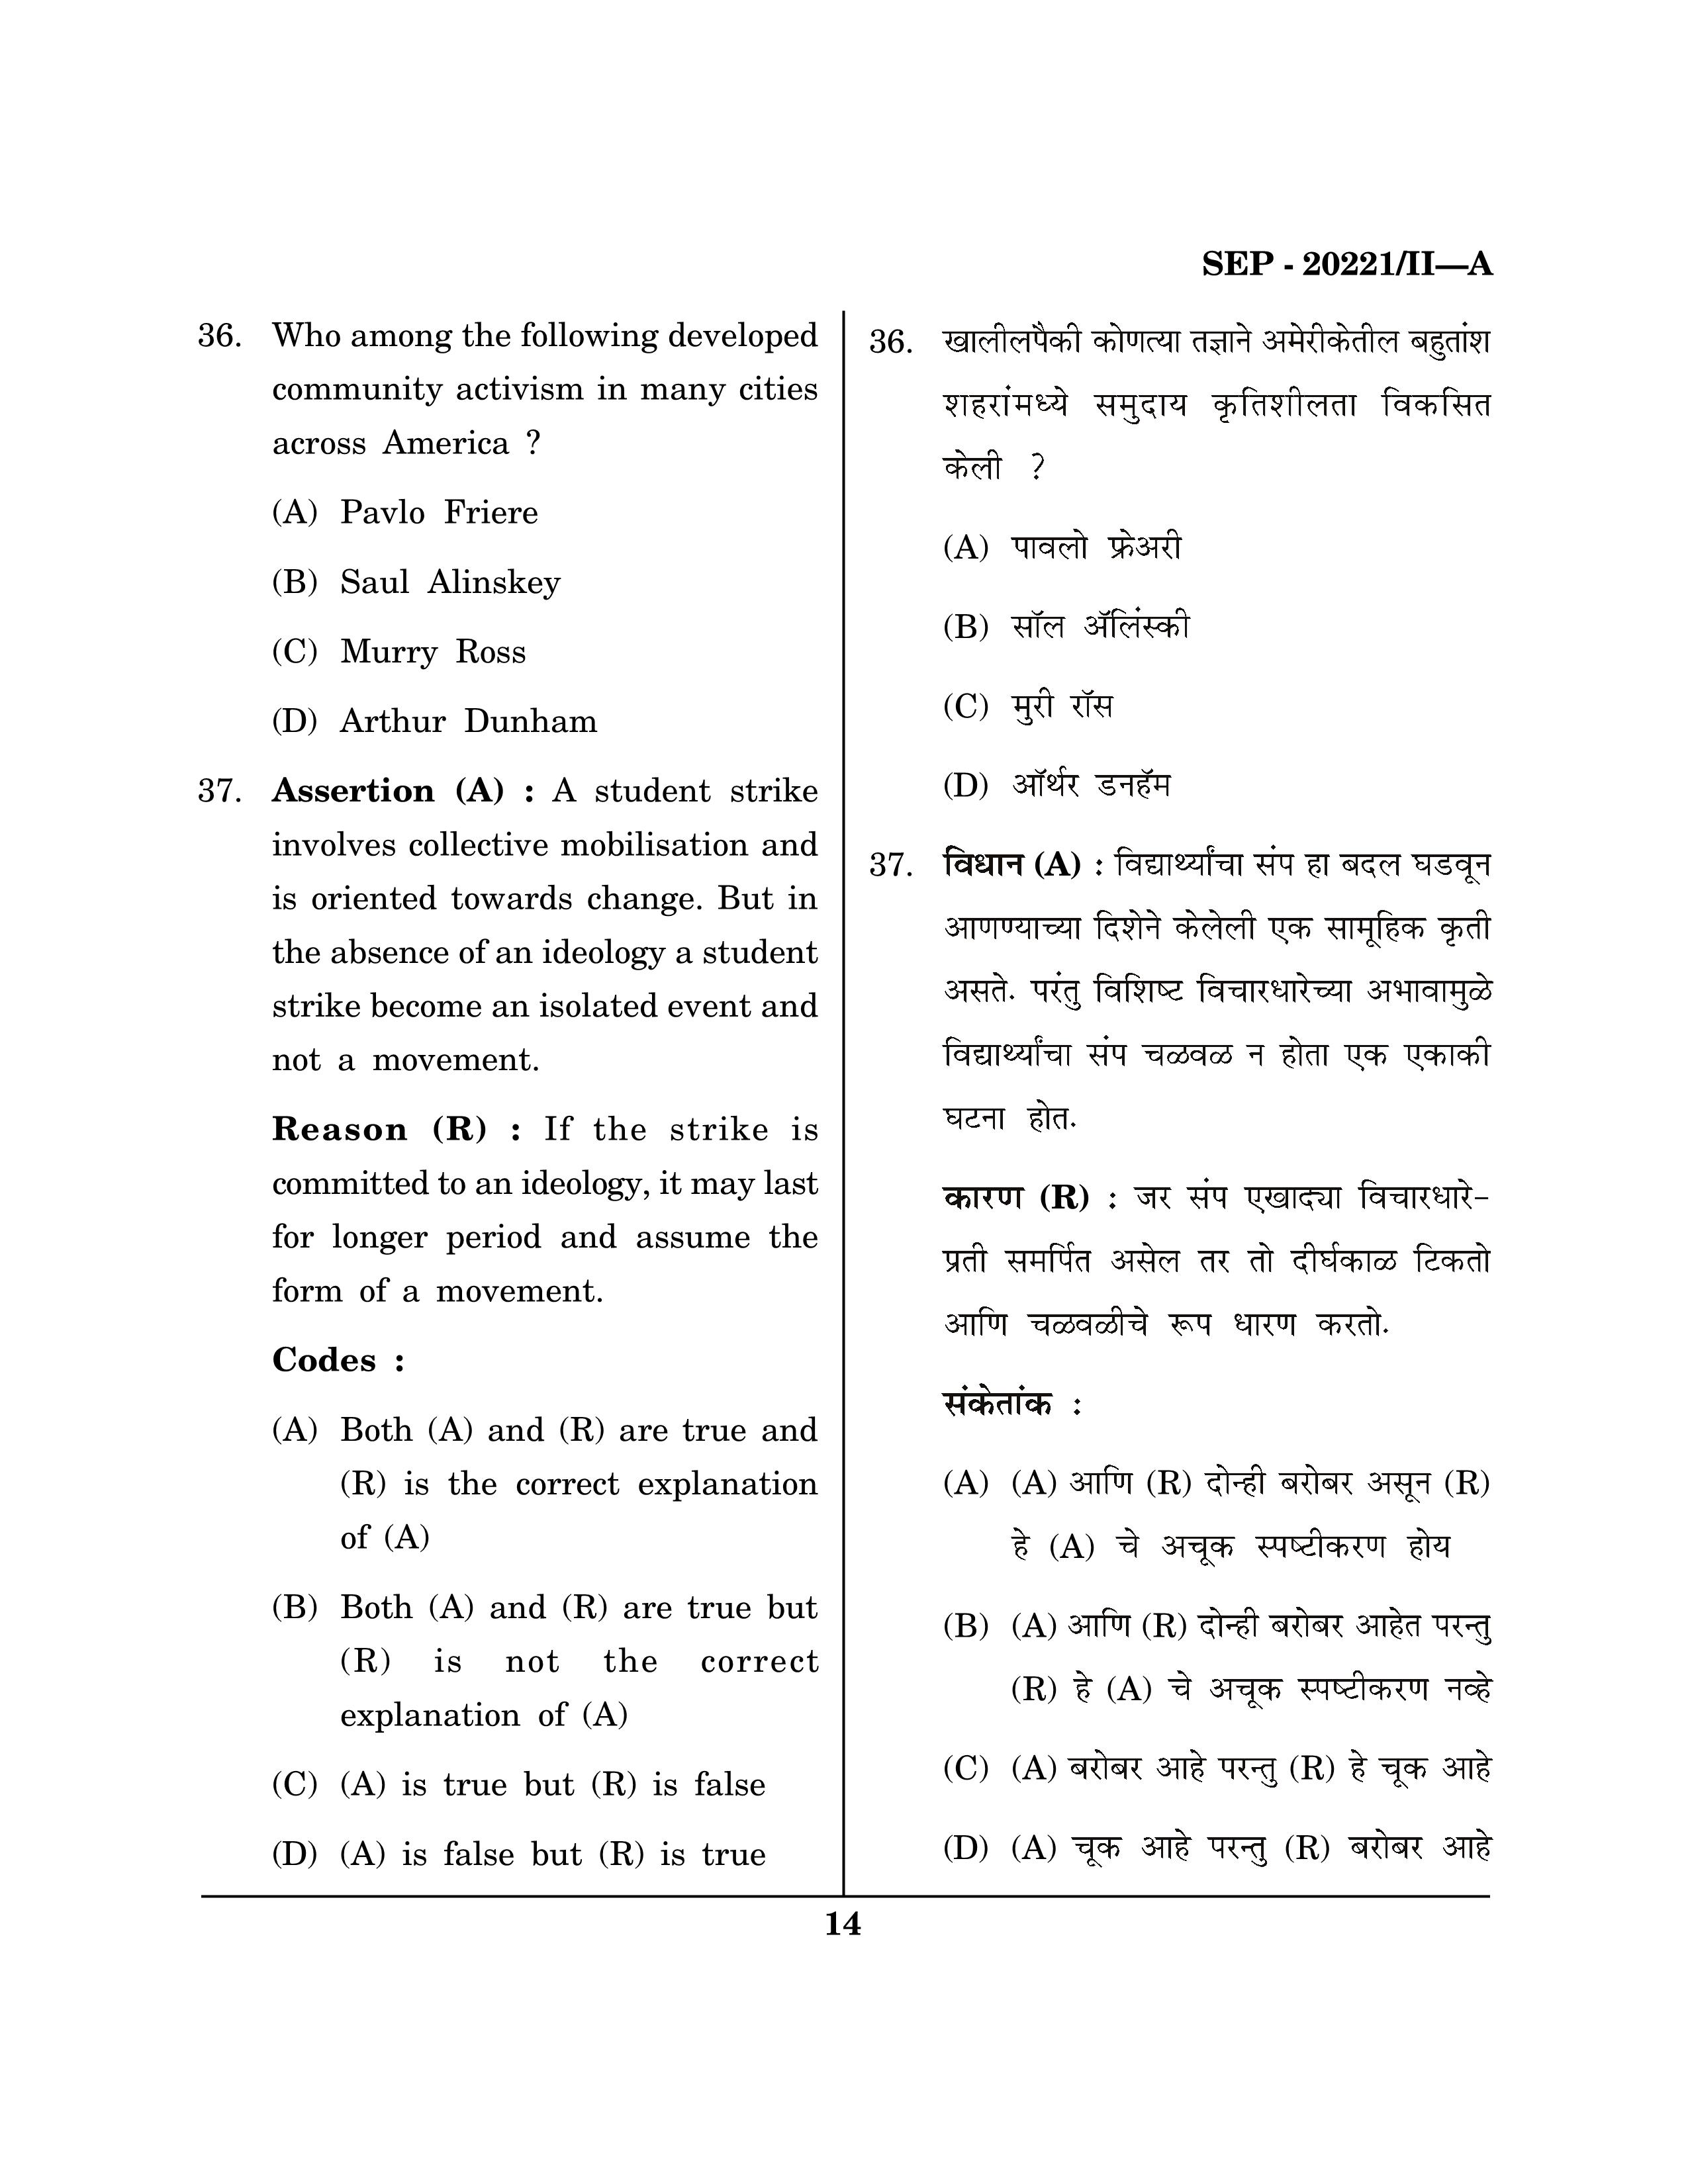 Maharashtra SET Social Work Exam Question Paper September 2021 13